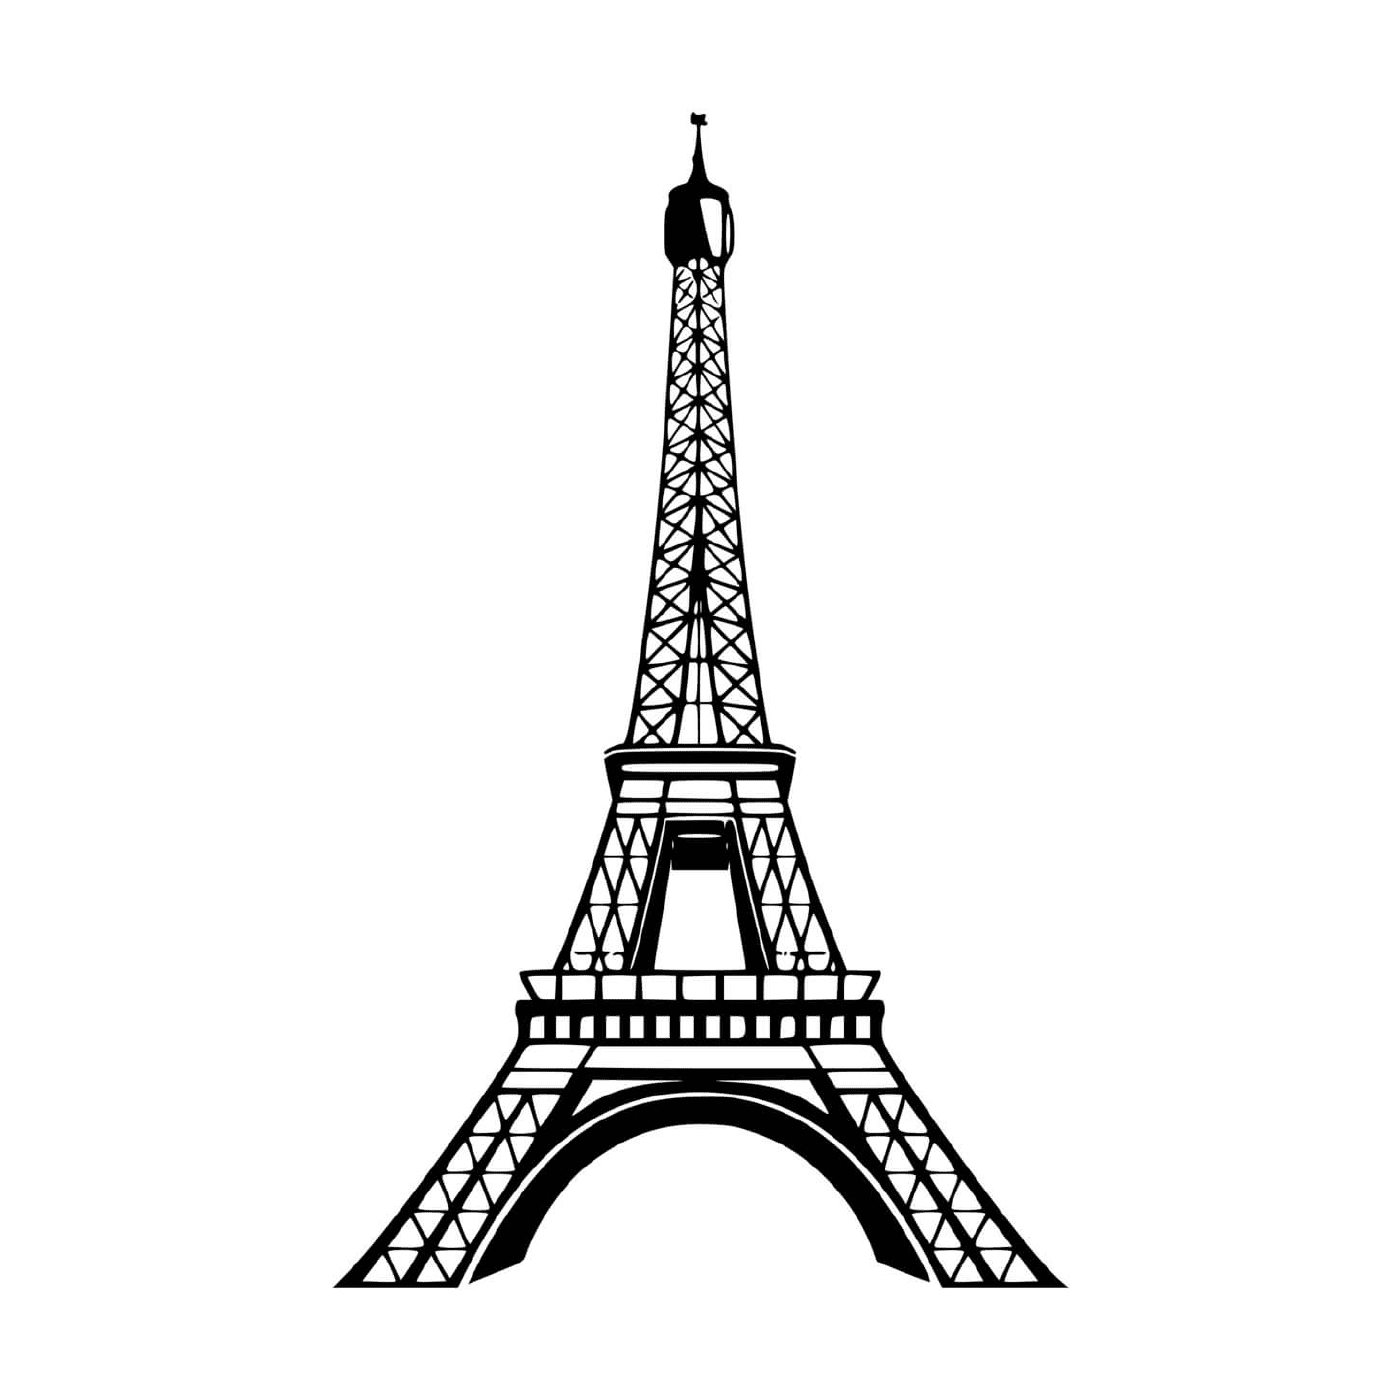  Официальный символ Эйфелевой башни Париж 